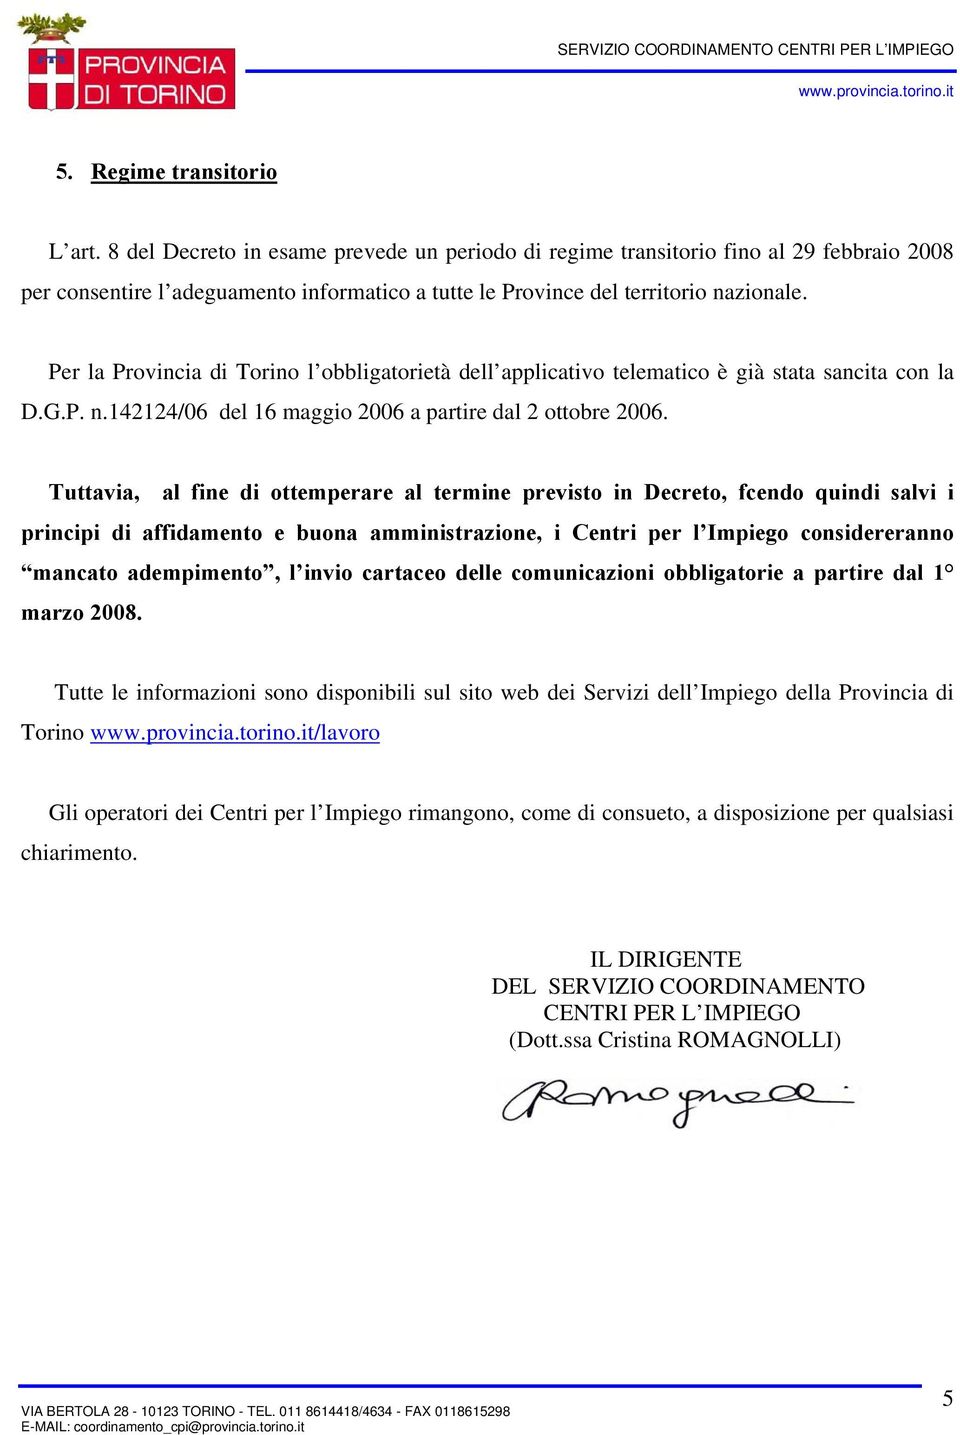 Per la Provincia di Torino l obbligatorietà dell applicativo telematico è già stata sancita con la D.G.P. n.142124/06 del 16 maggio 2006 a partire dal 2 ottobre 2006.